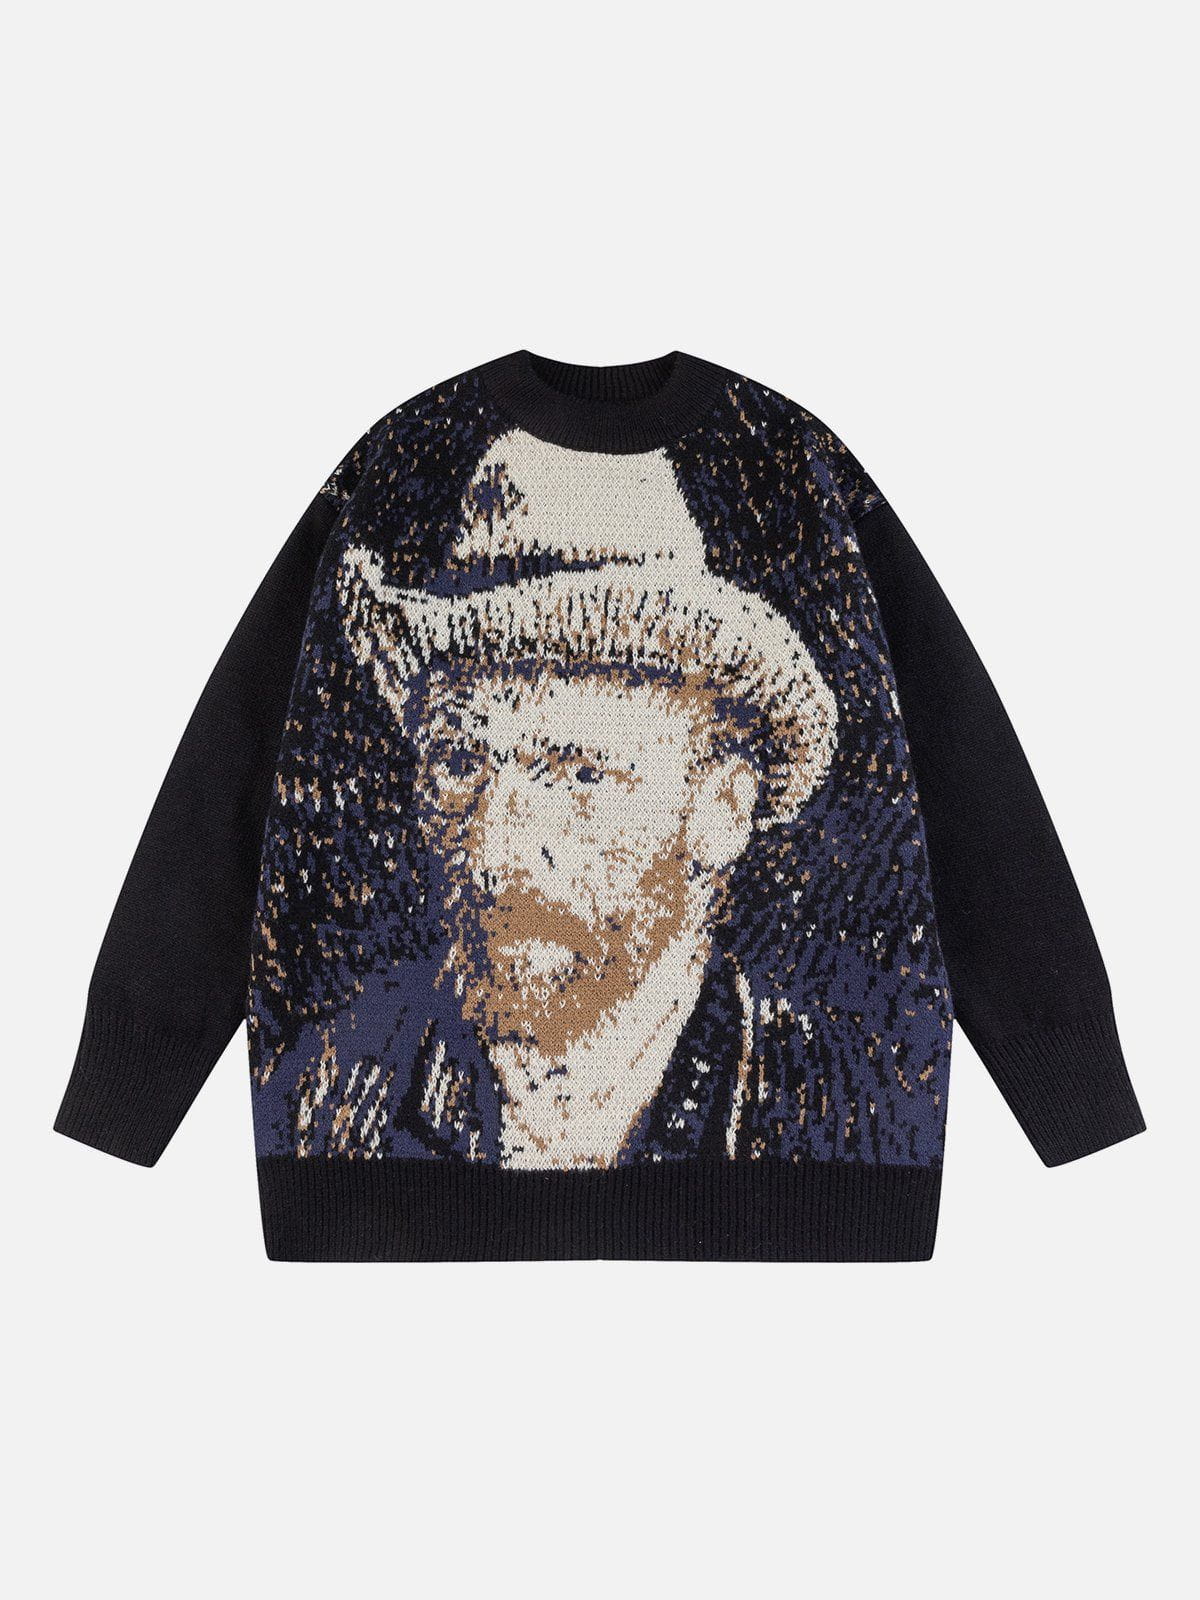 Faire Echo "Van Gough" Portrait Print Sweater